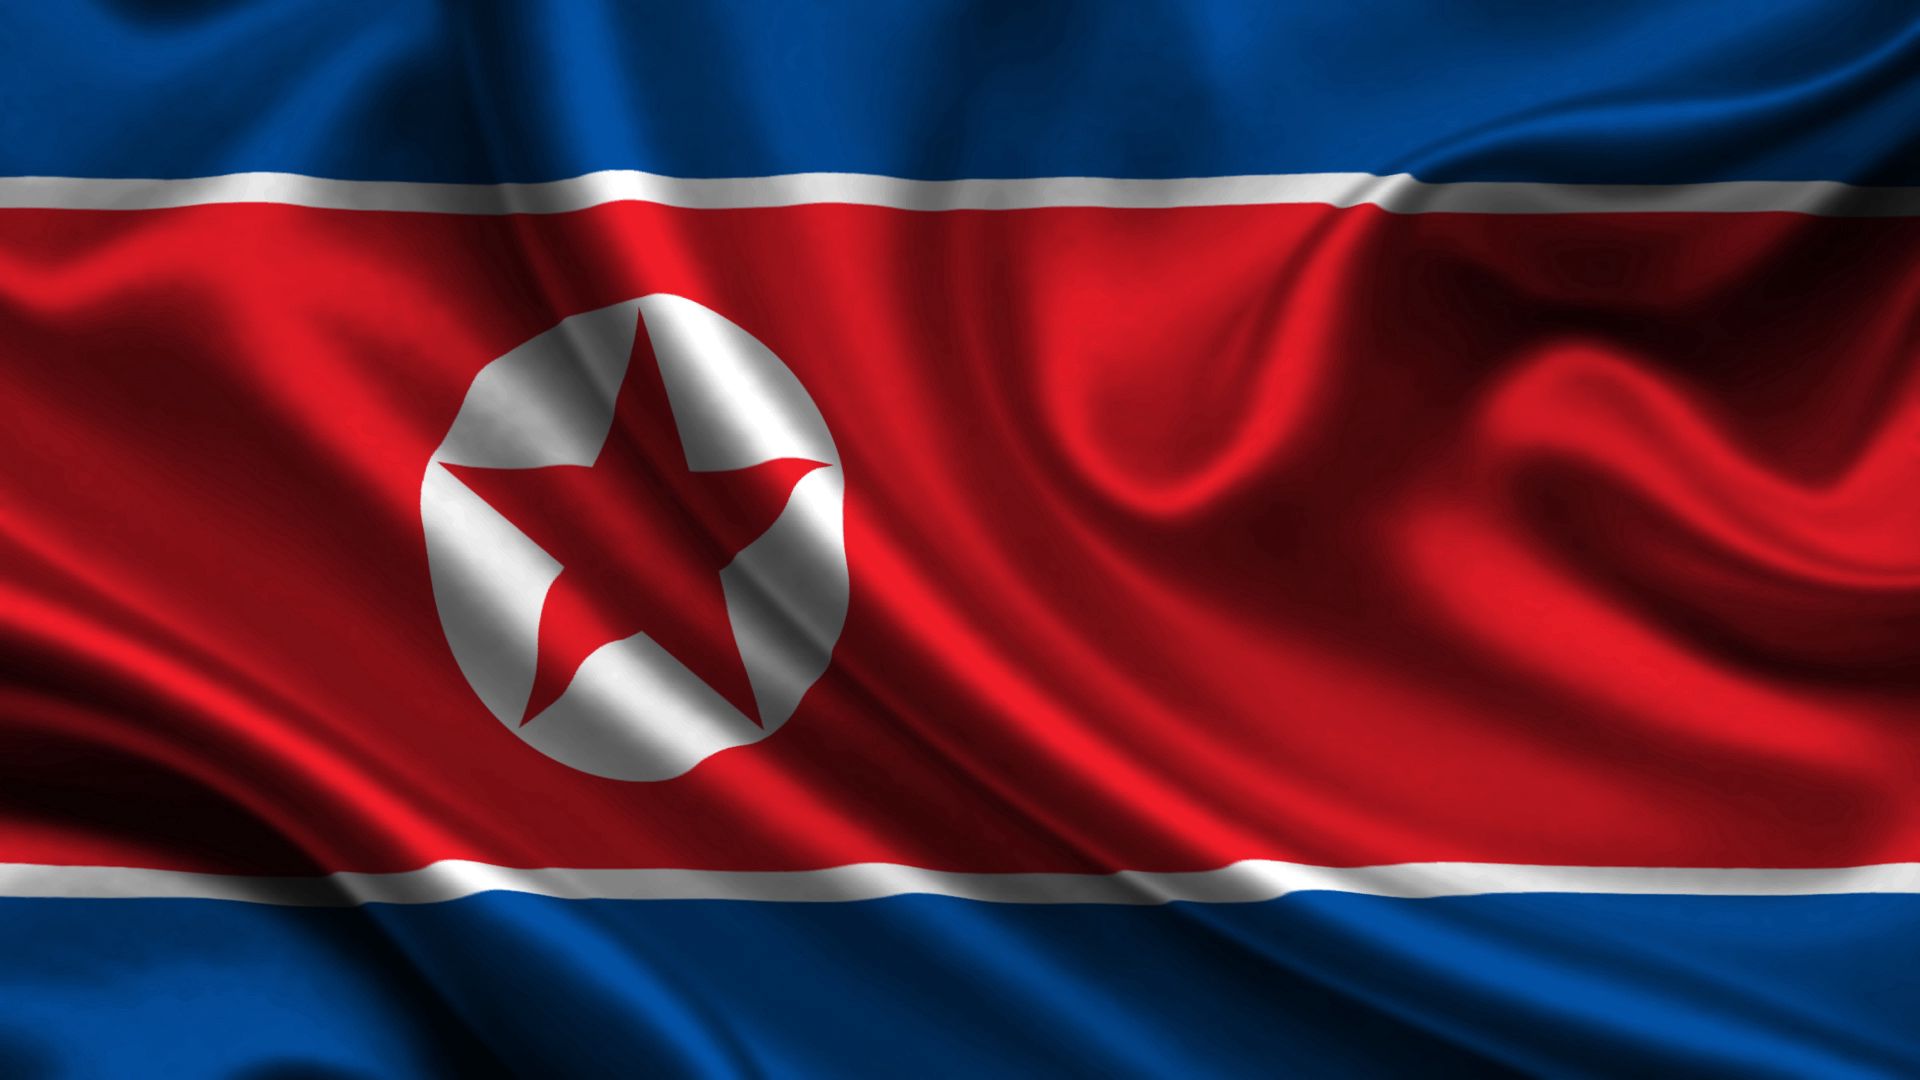 Скачать обои "Северная Корея" на телефон в высоком качестве, вертикальные картинки "Северная Корея" бесплатно